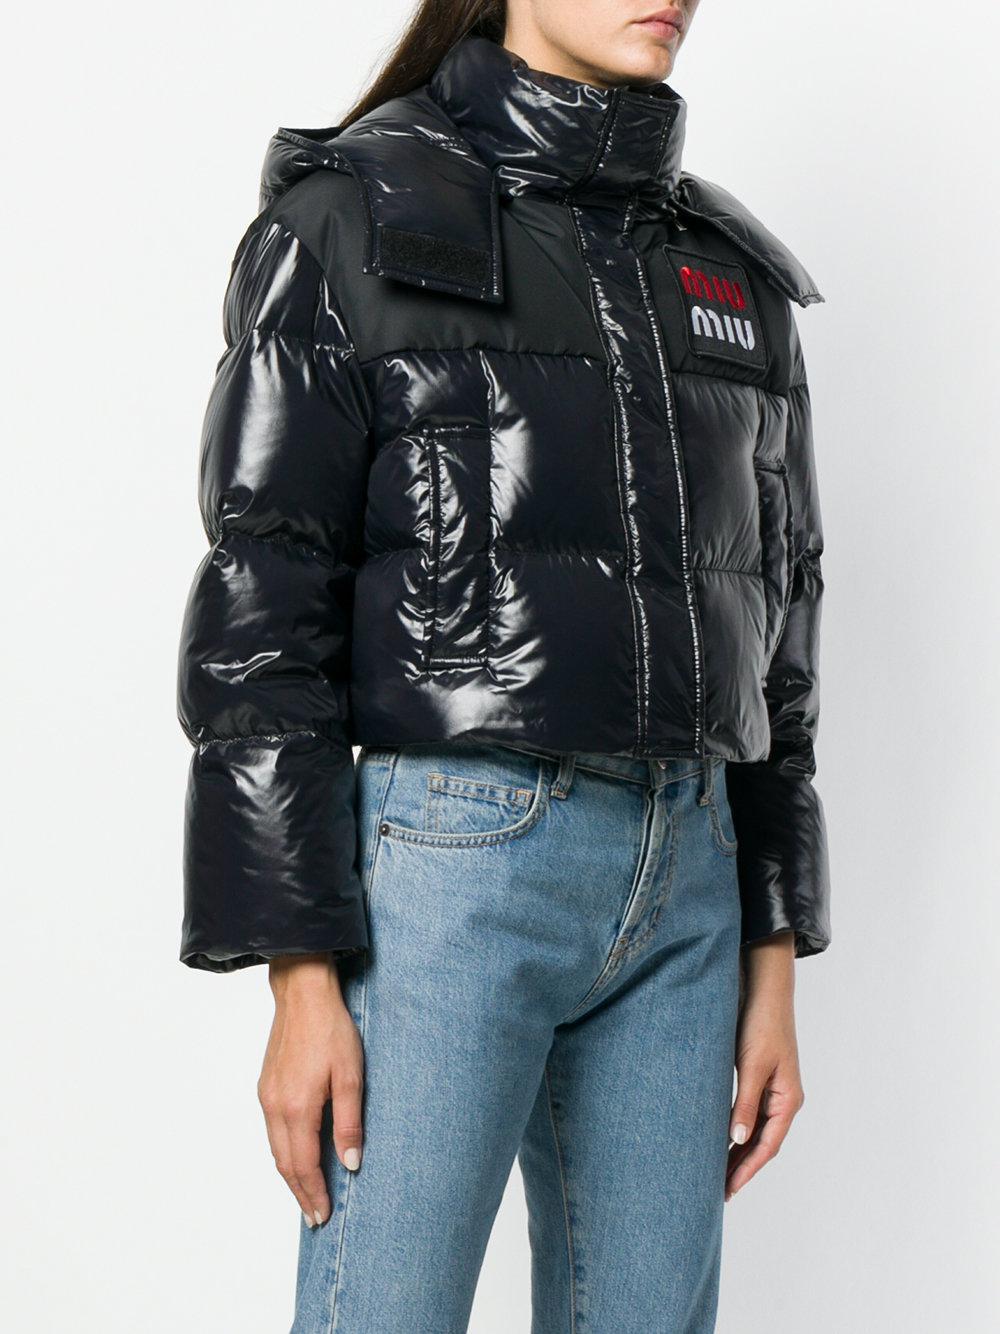 Miu Miu Cropped Puffer Jacket in Black - Lyst